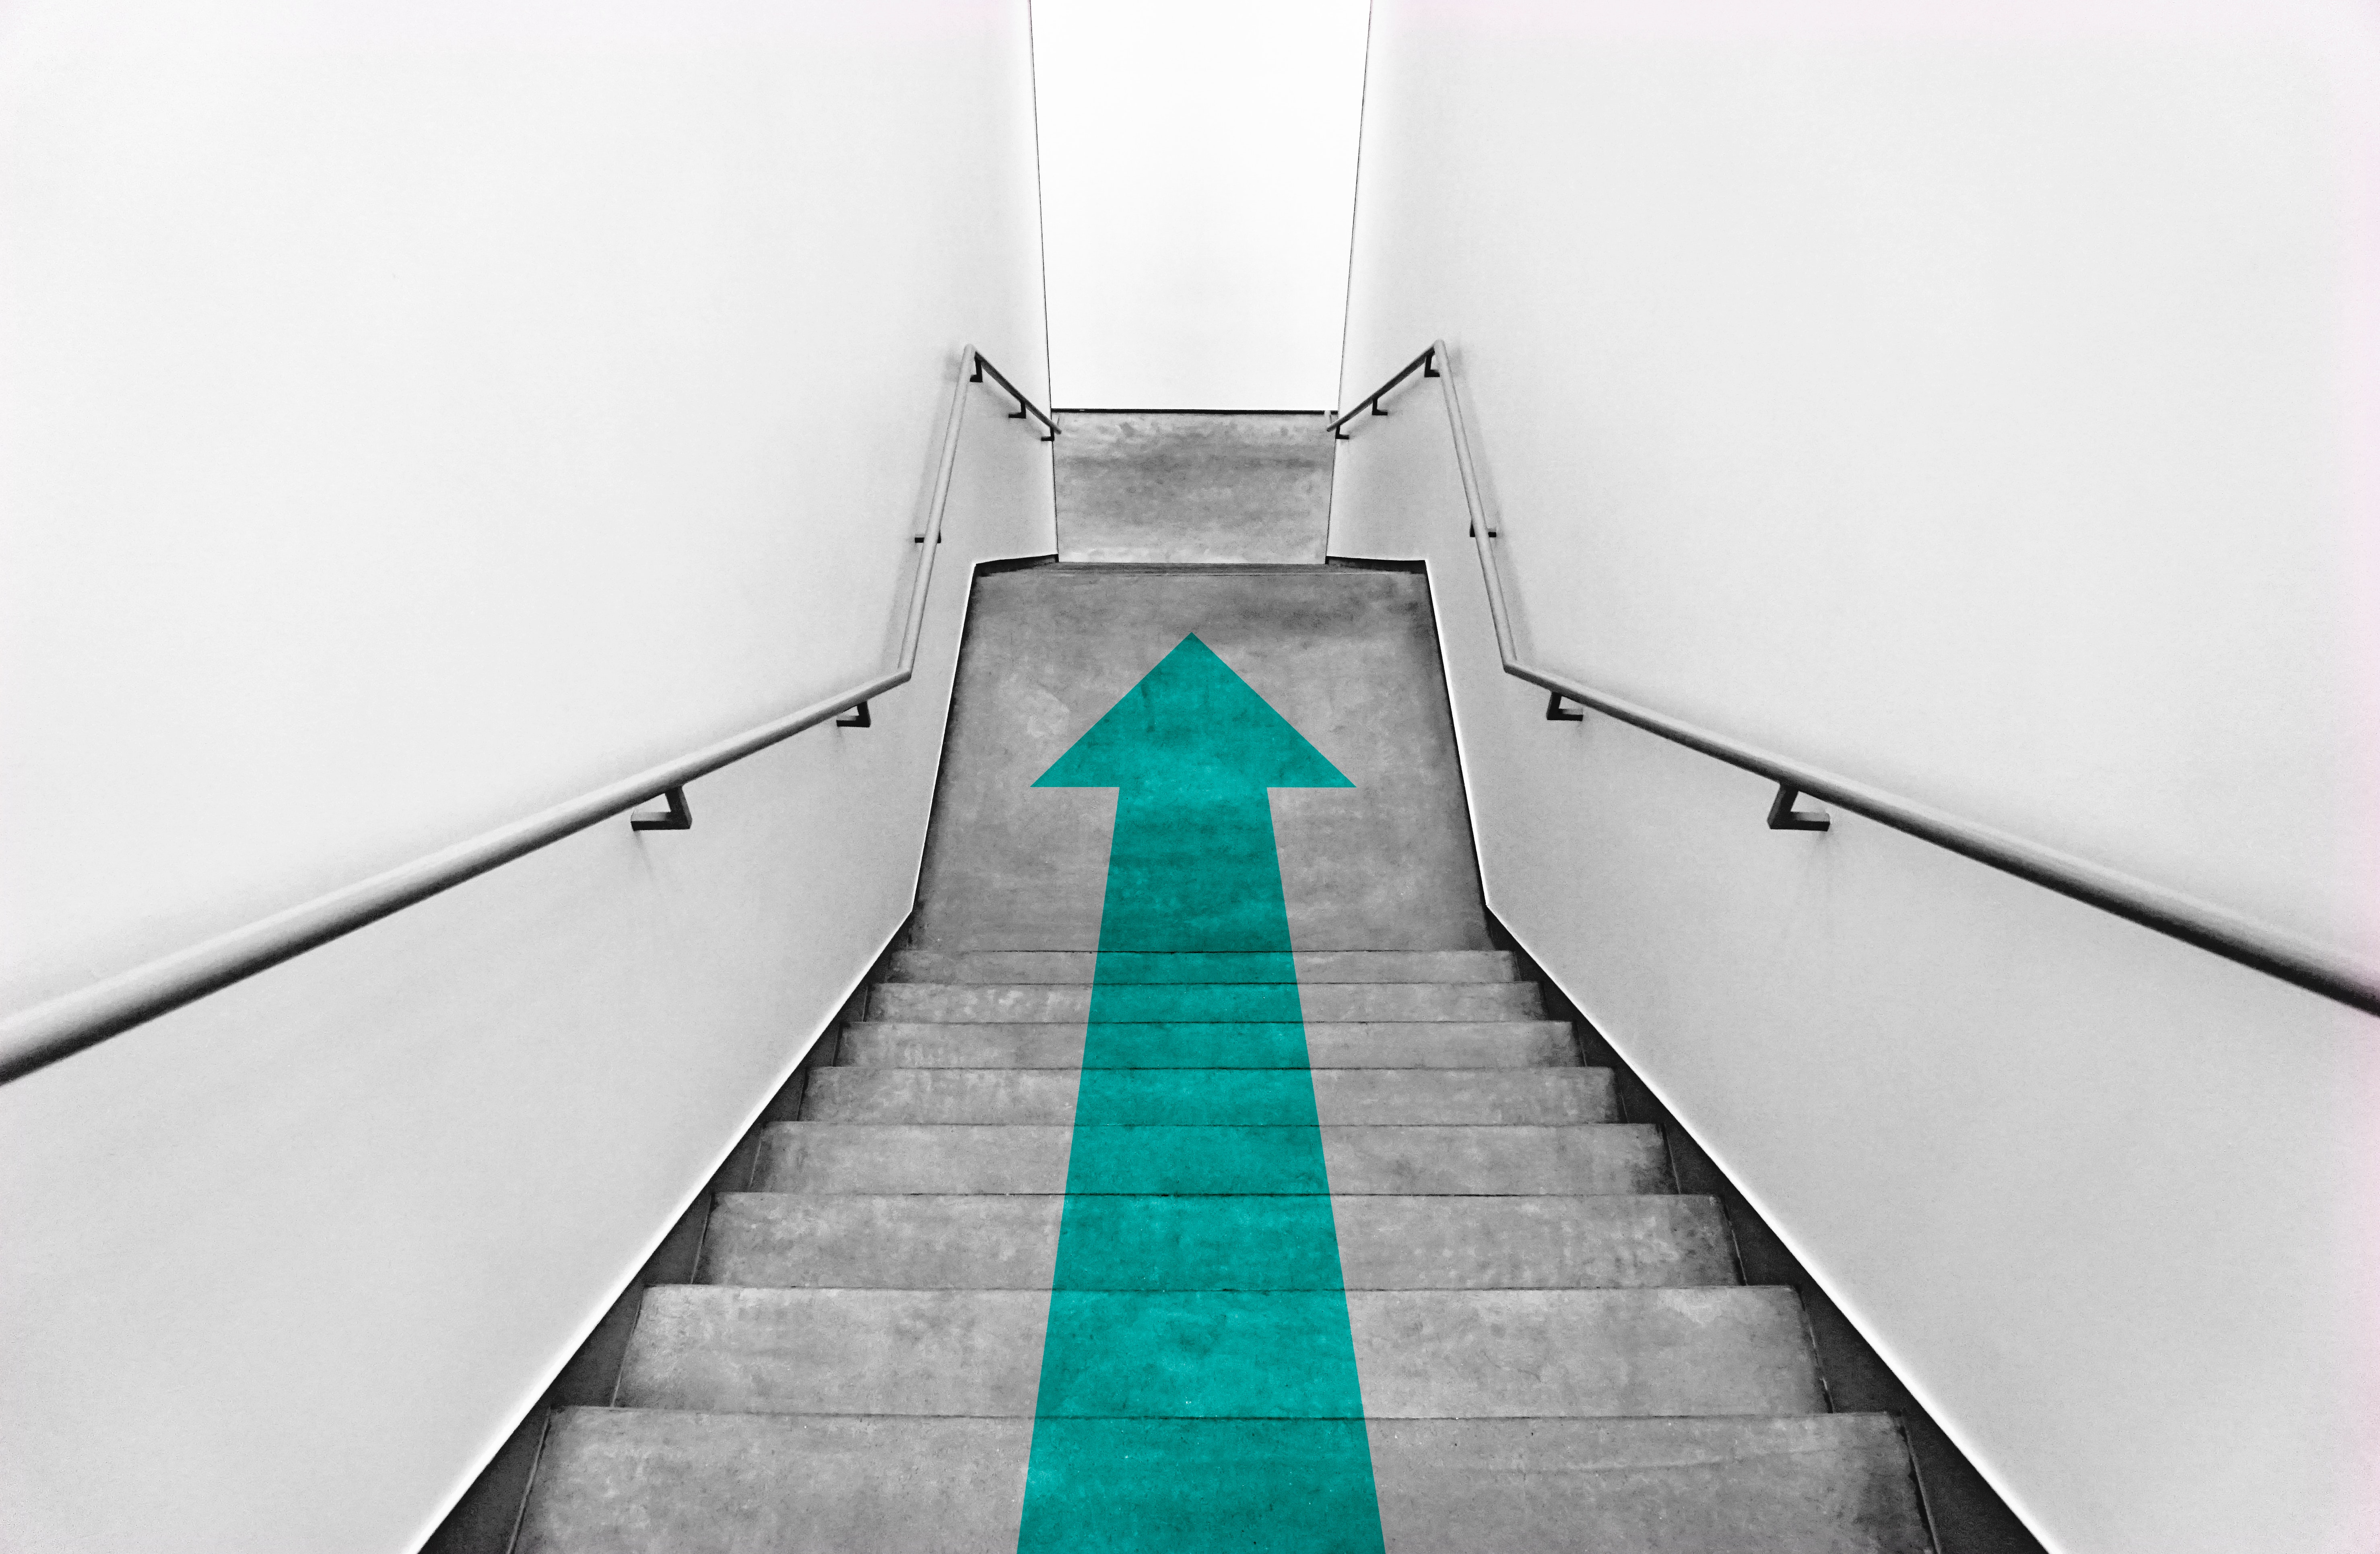 Escaleras de concreto con una flecha verde en medio